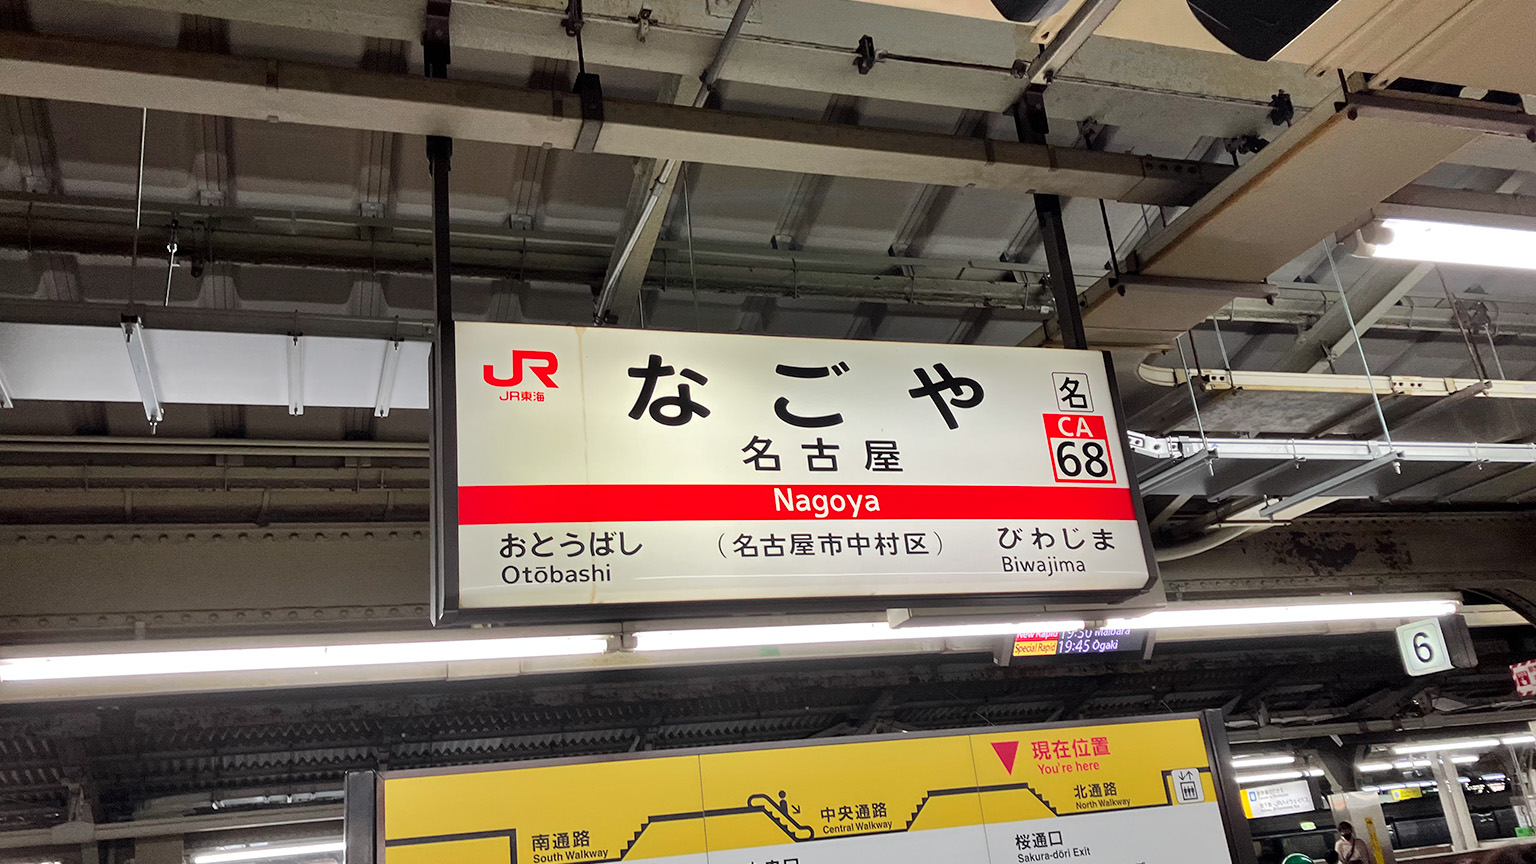 JR名古屋駅の駅名標の写真